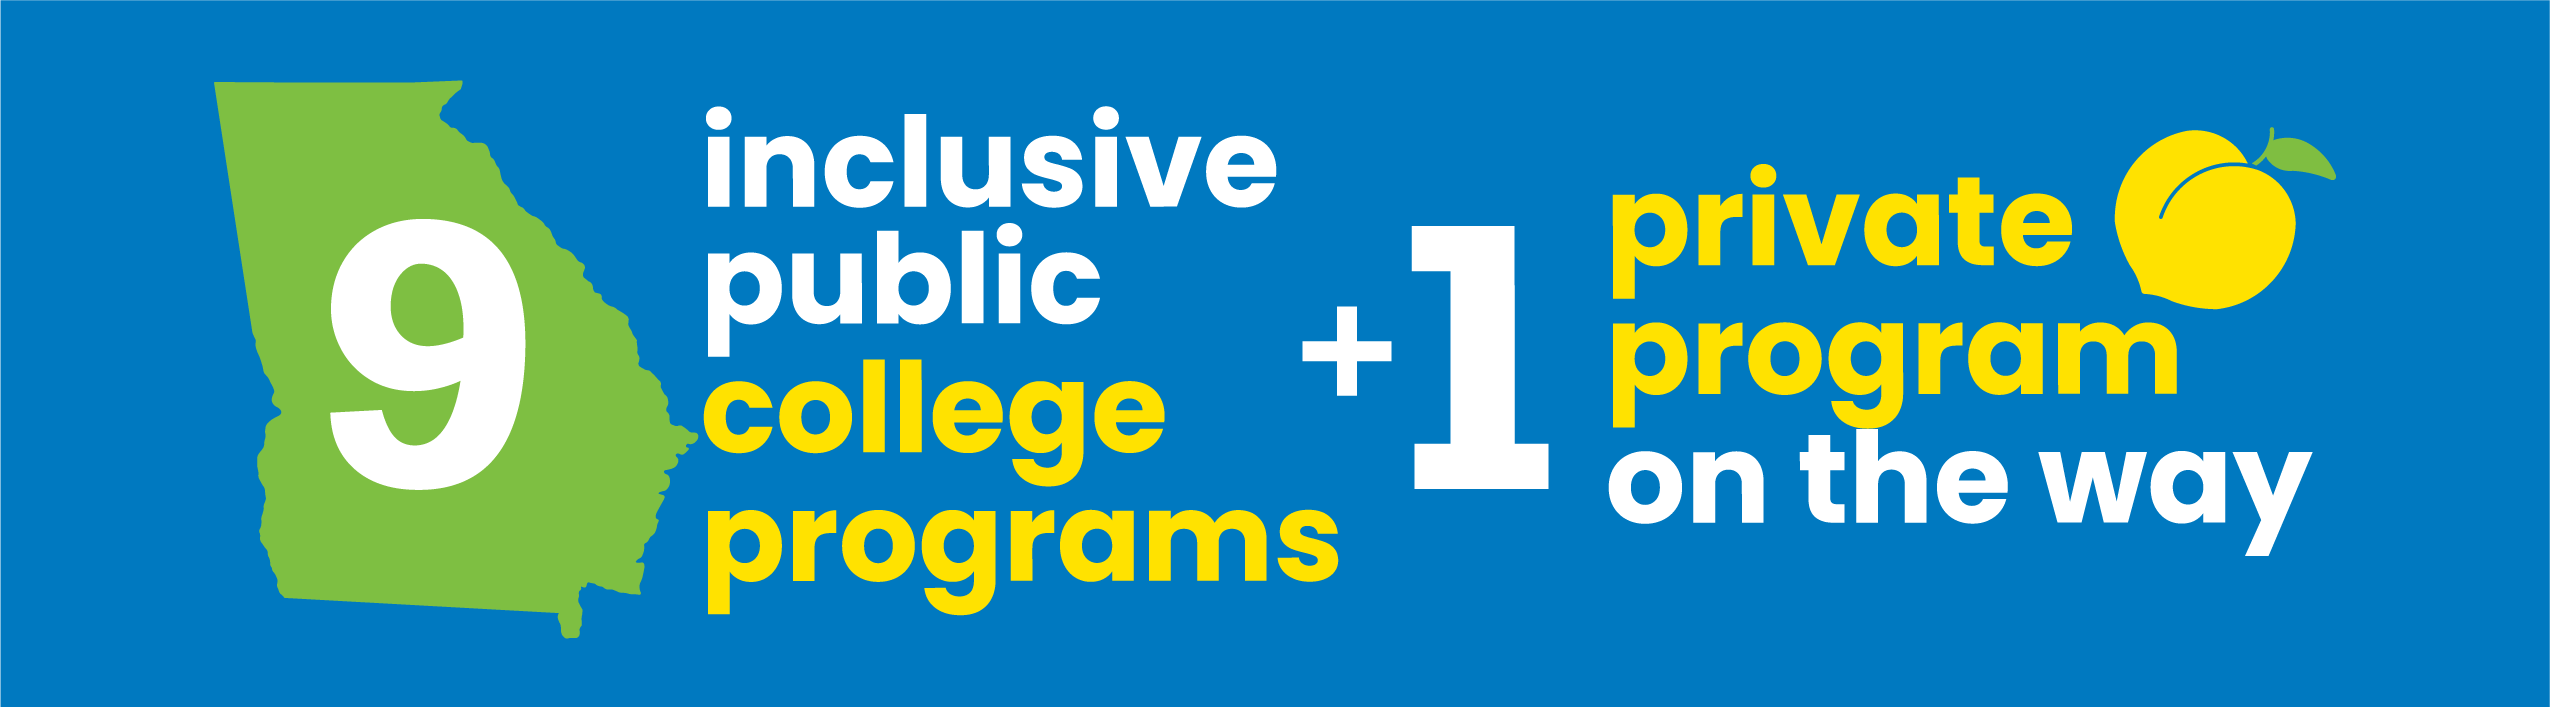 9 inclusive public college programs + 1 private program on the way